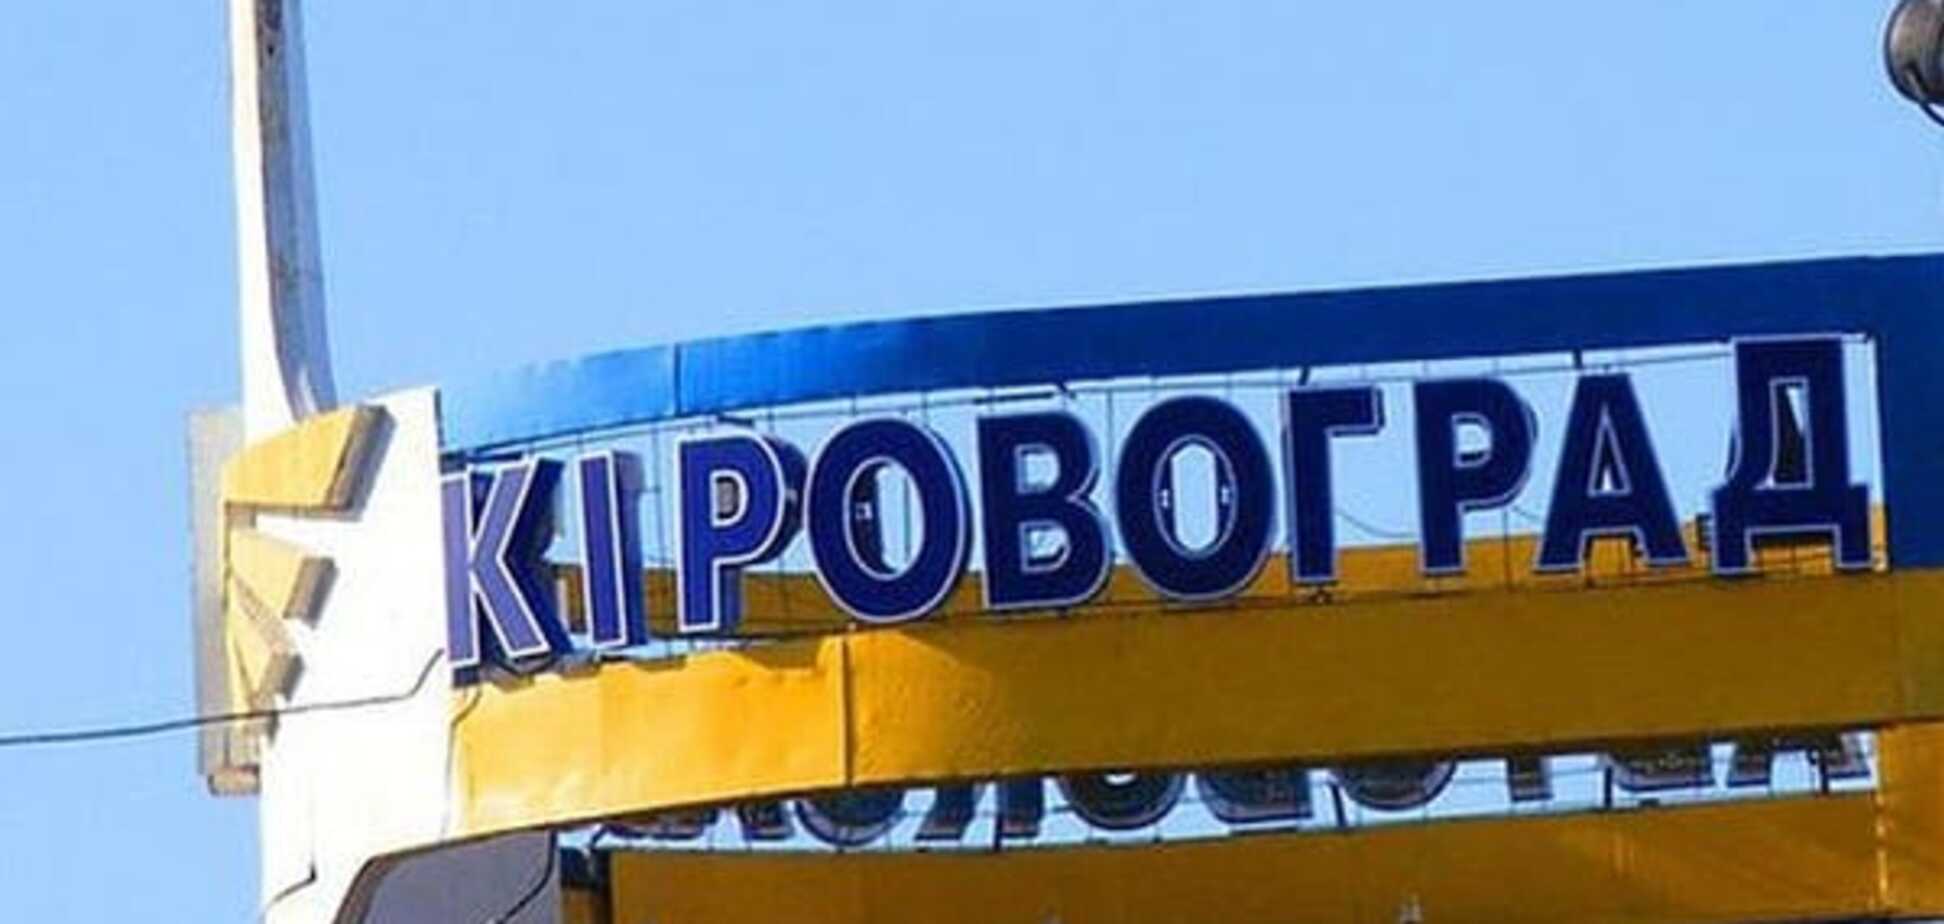 Кировоградский облсовет решил перейти к особым договорным отношениям с Киевом